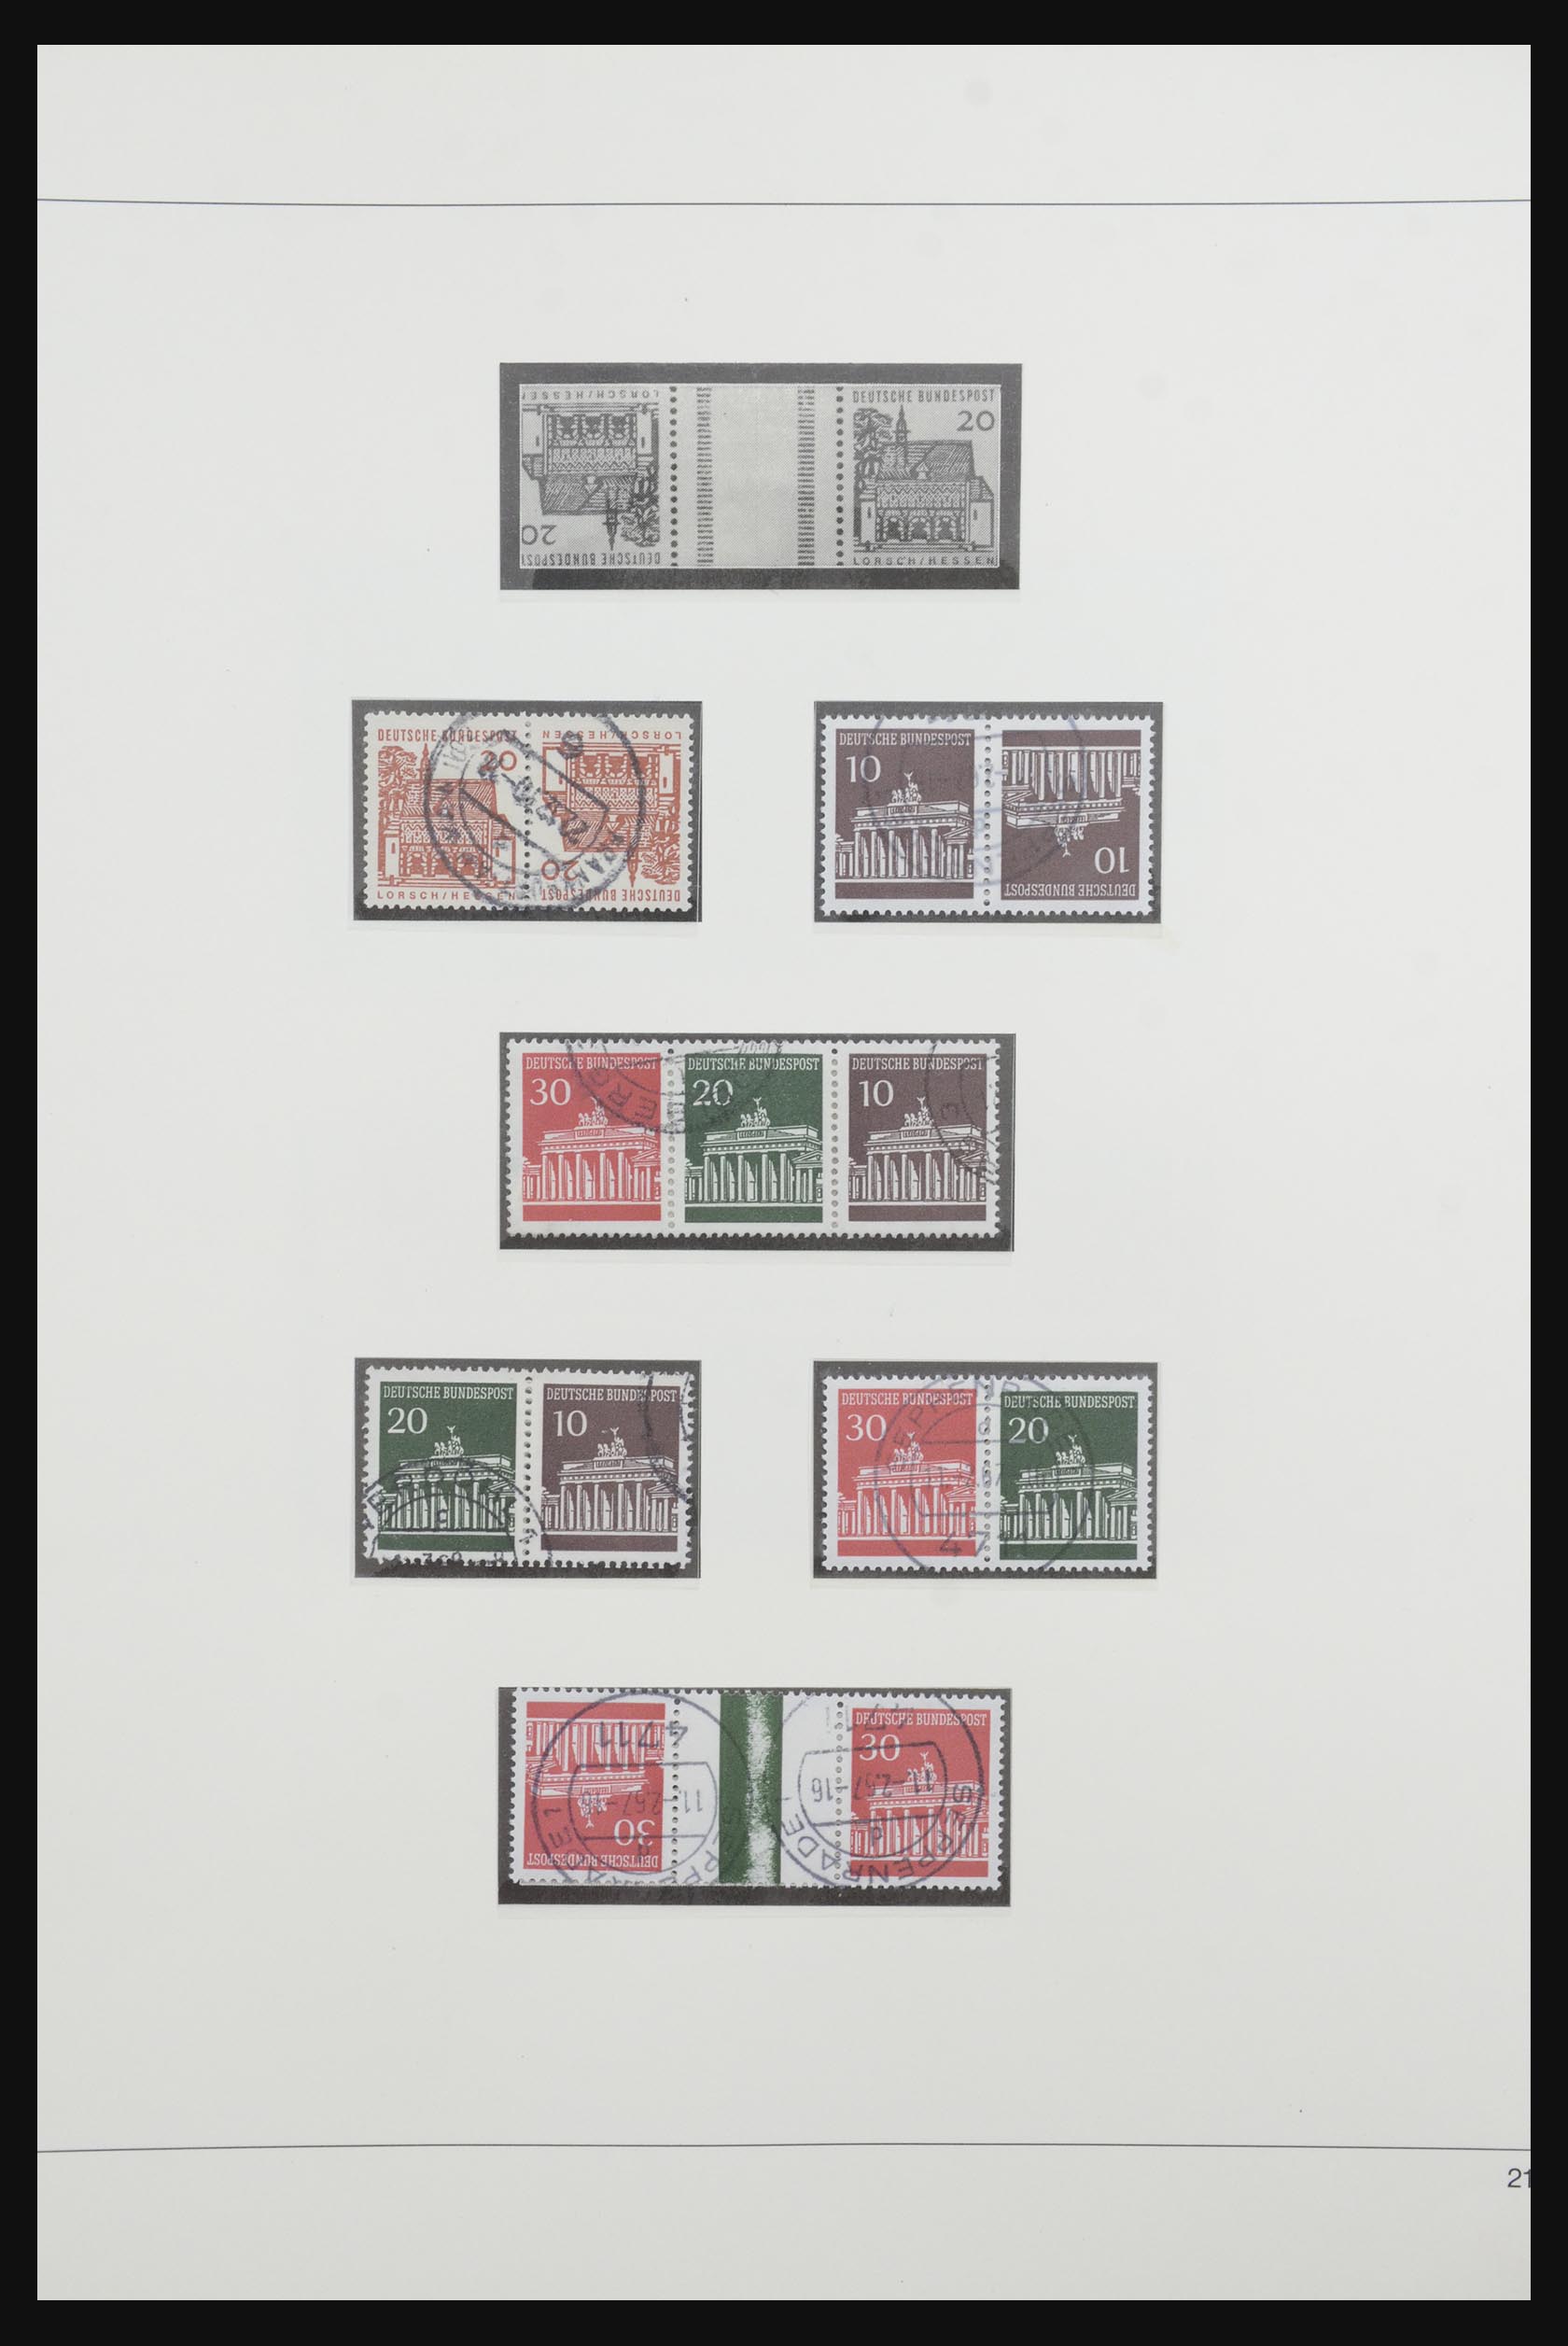 31842 029 - 31842 Bundespost combinaties 1951-2003.